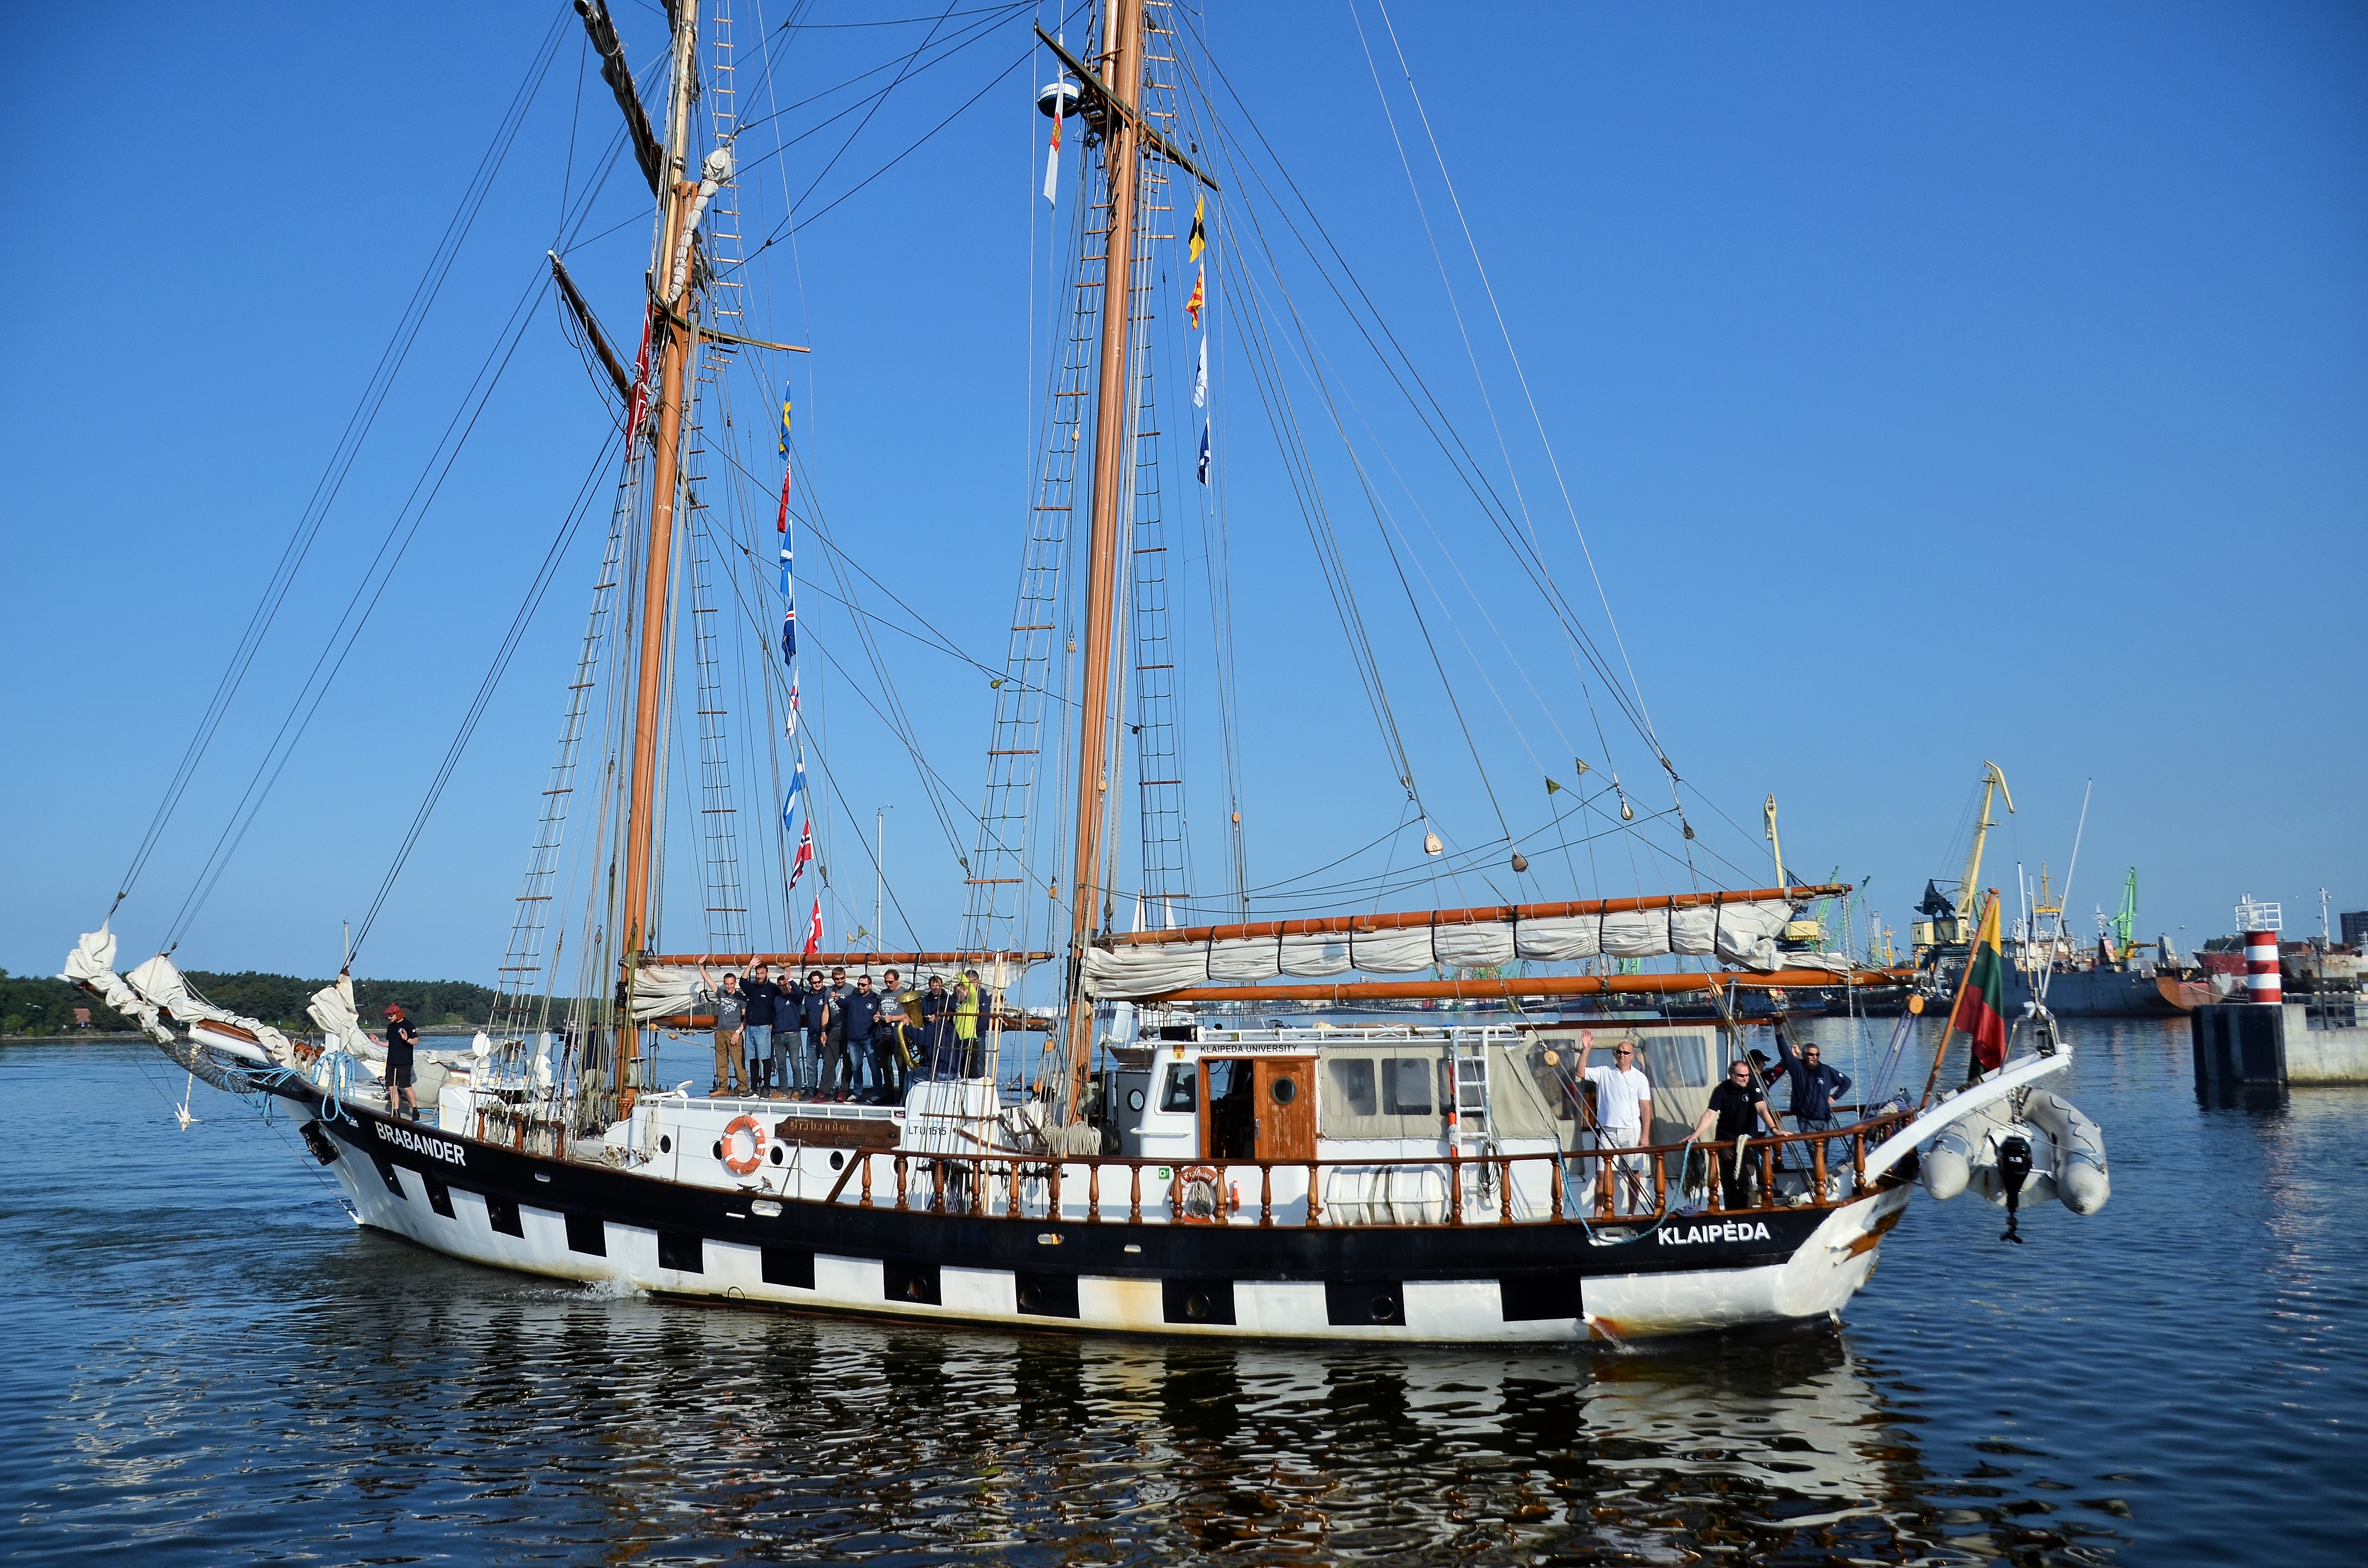 Jūrų muziejaus į jūrą išplukdyti sieks visą Lietuvą